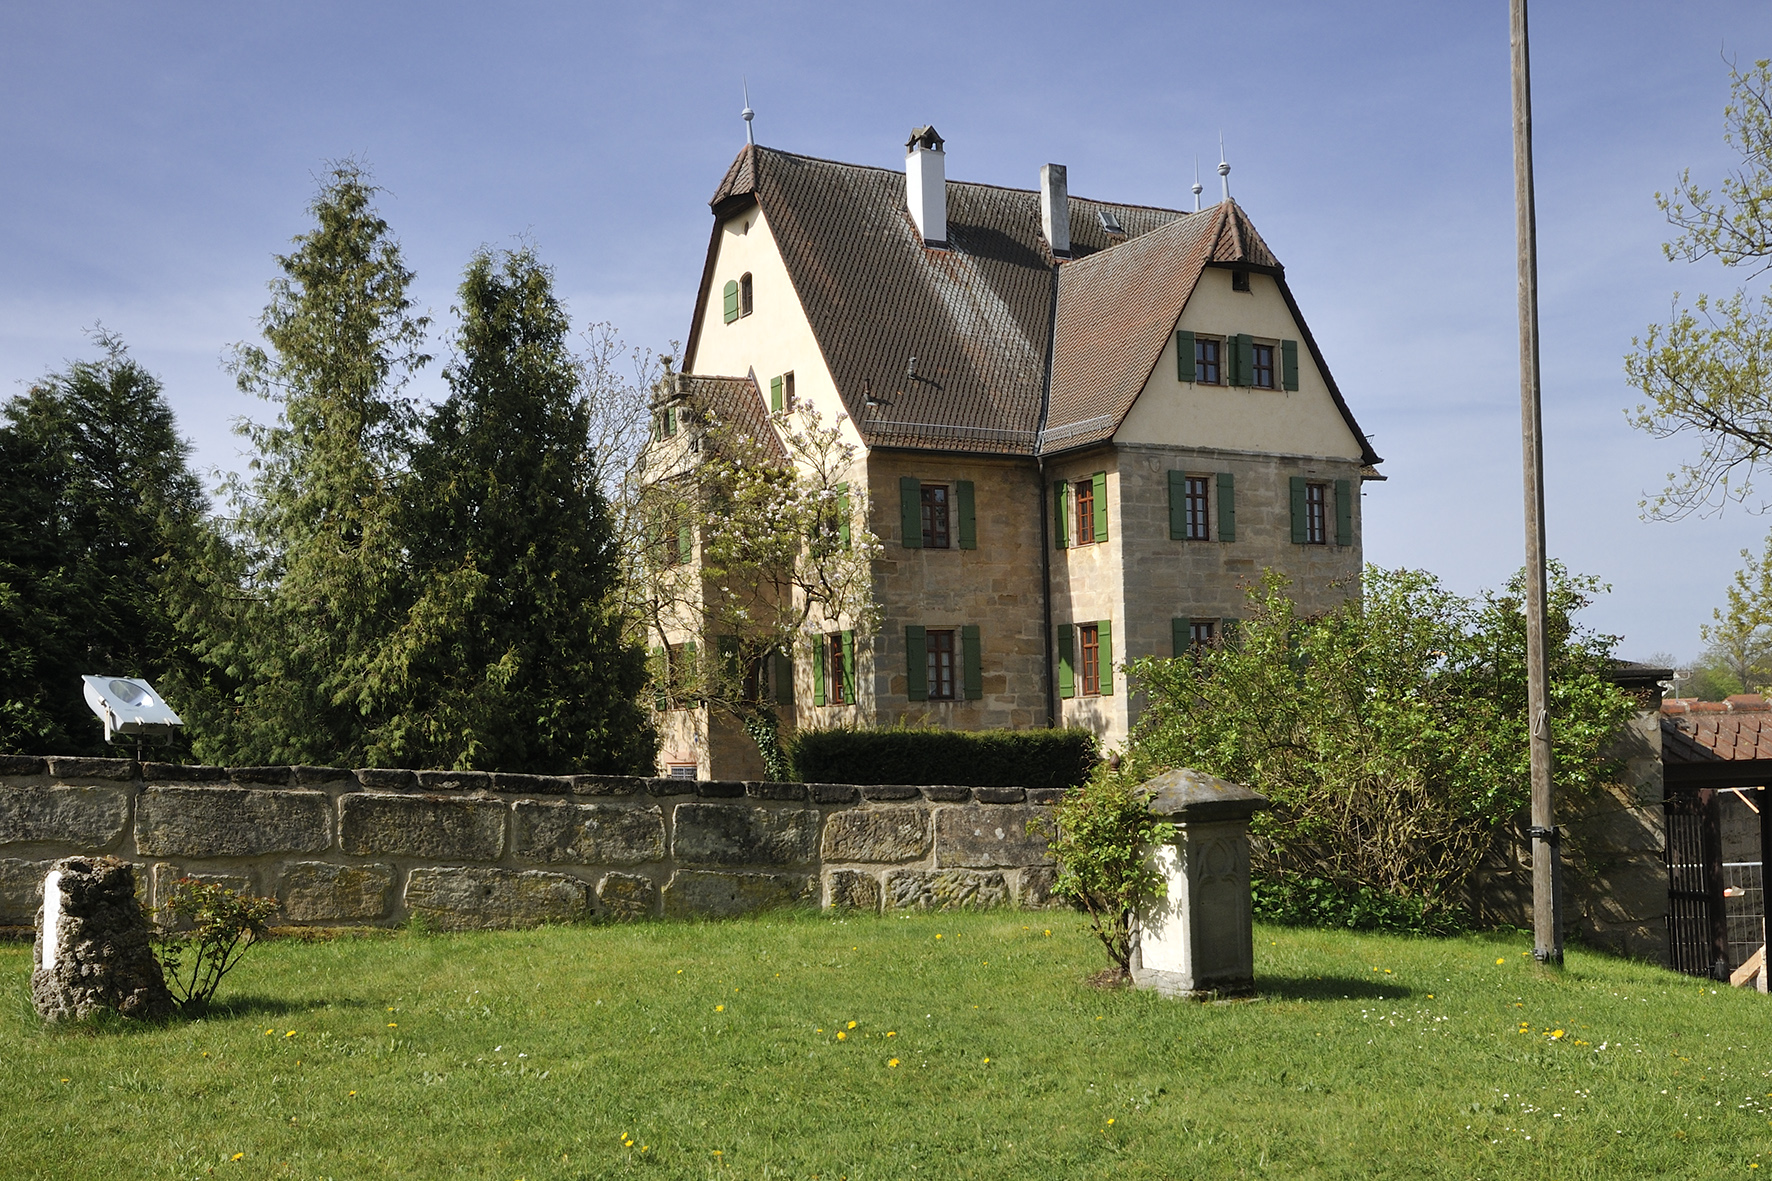 Grünes Schloss in Heroldsberg. Ansicht aus dem Kirchhof der St. Matthäus Kirche